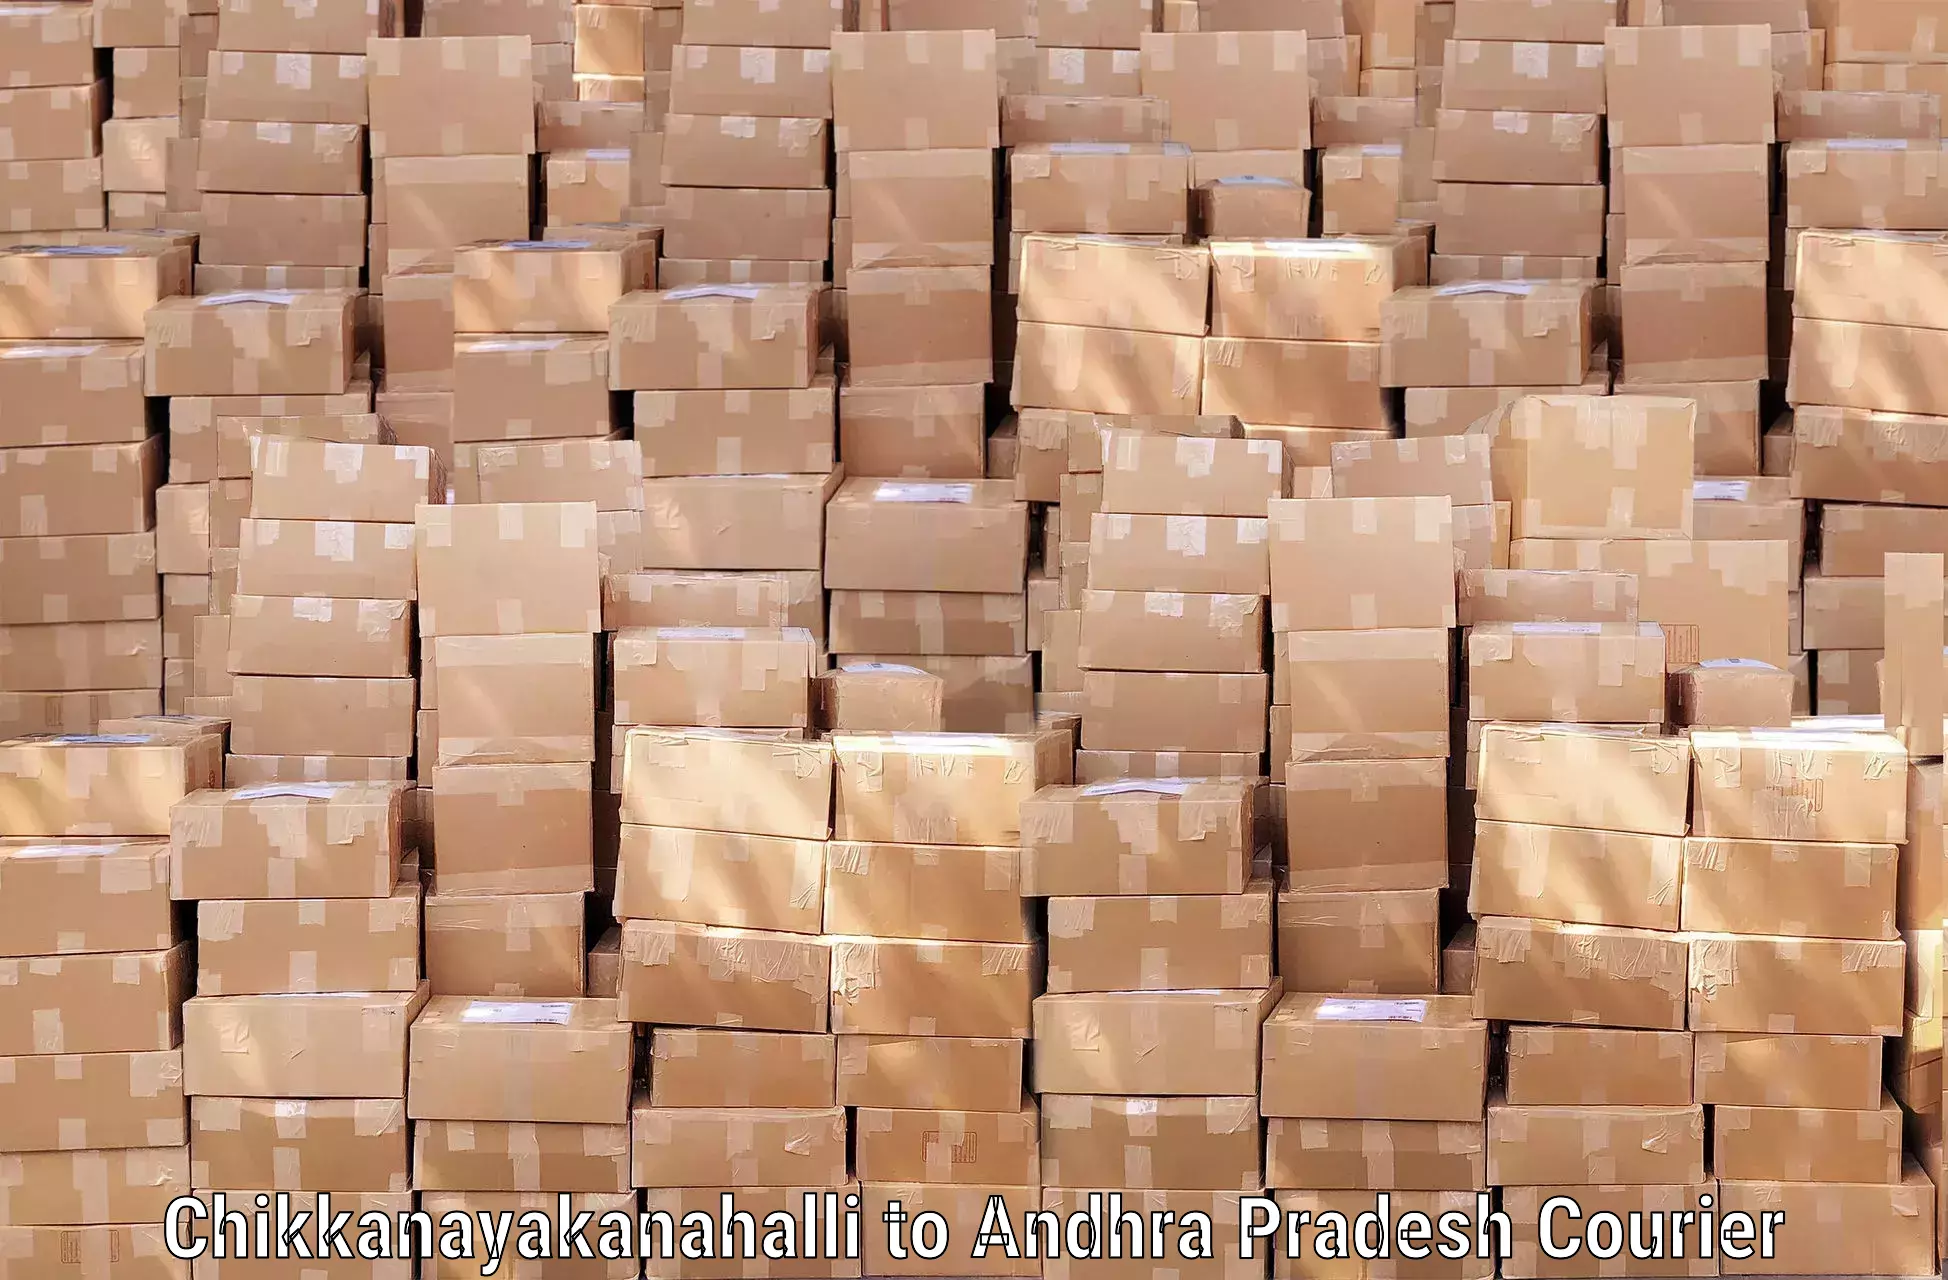 Luggage shipment tracking Chikkanayakanahalli to Andhra Pradesh